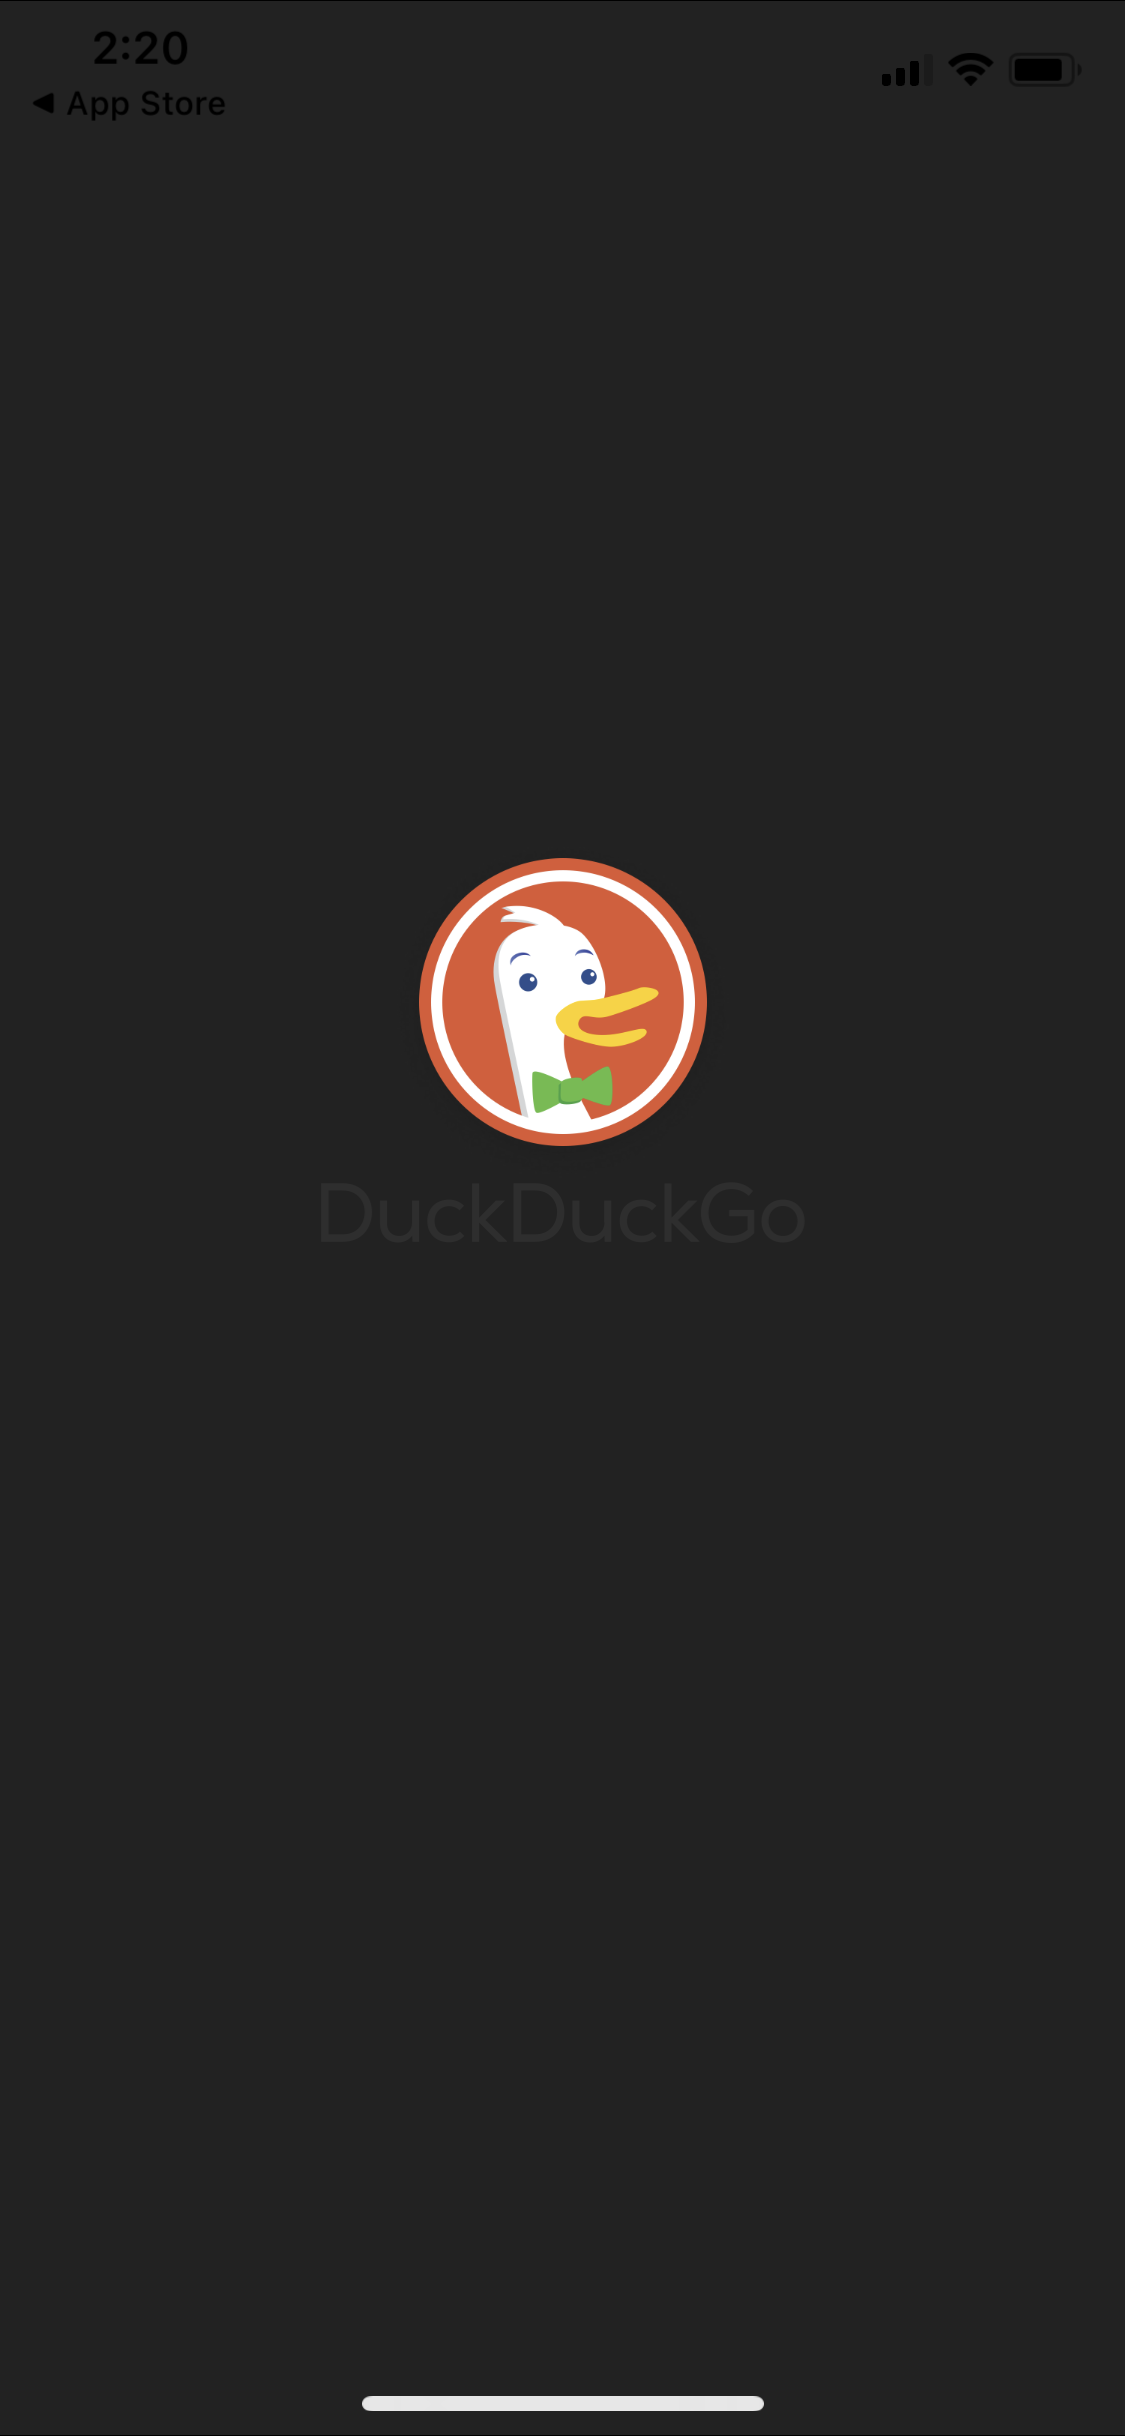 General browsing on DuckDuckGo video screenshot